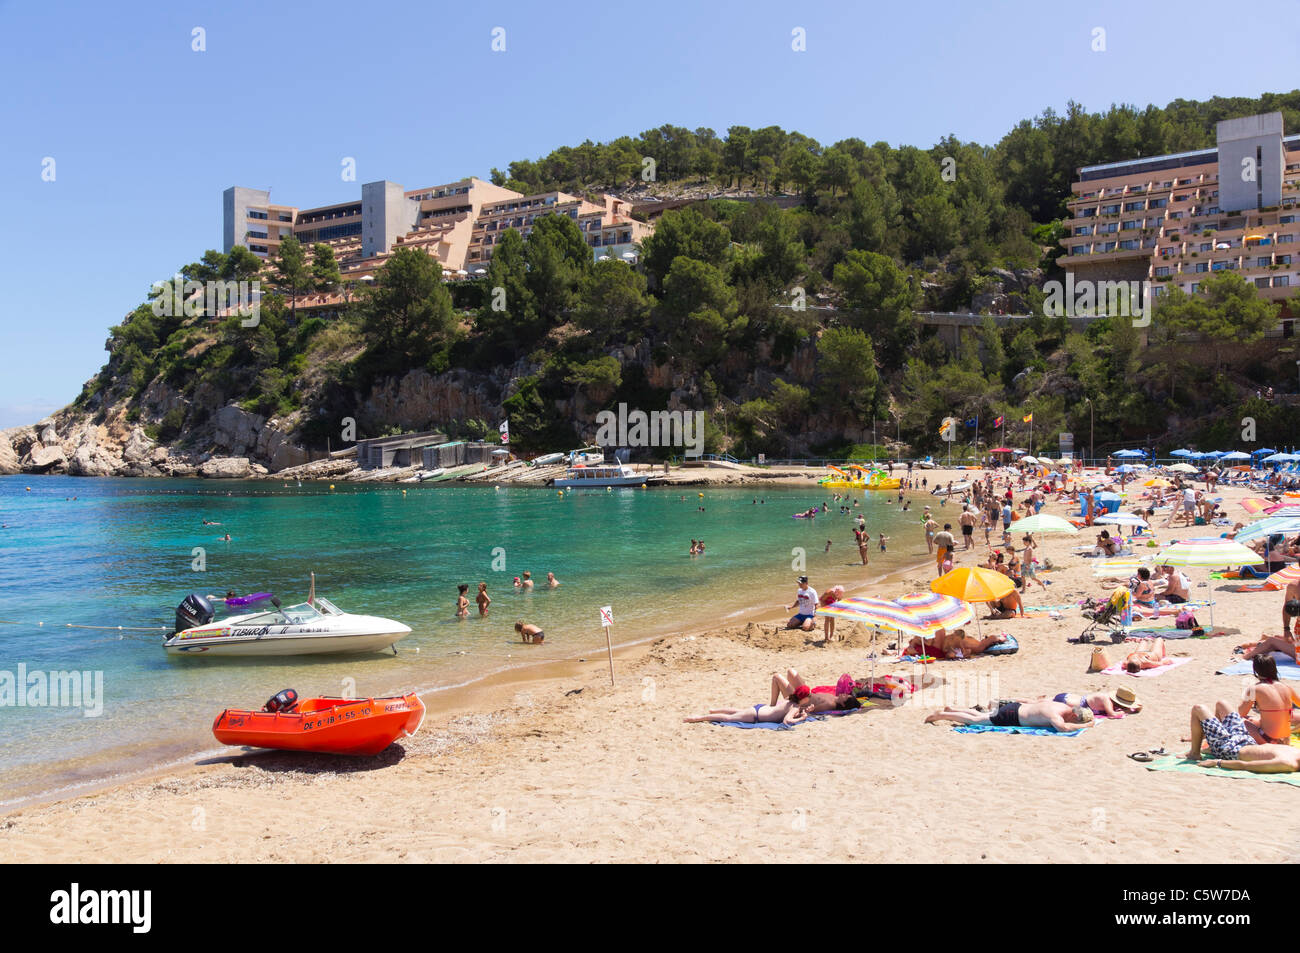 Ibiza, Isole Baleari, Spagna - piccolo villaggio di Port de Sant Miquel. Vista generale nella baia con spiaggia, mare, alberghi. Foto Stock